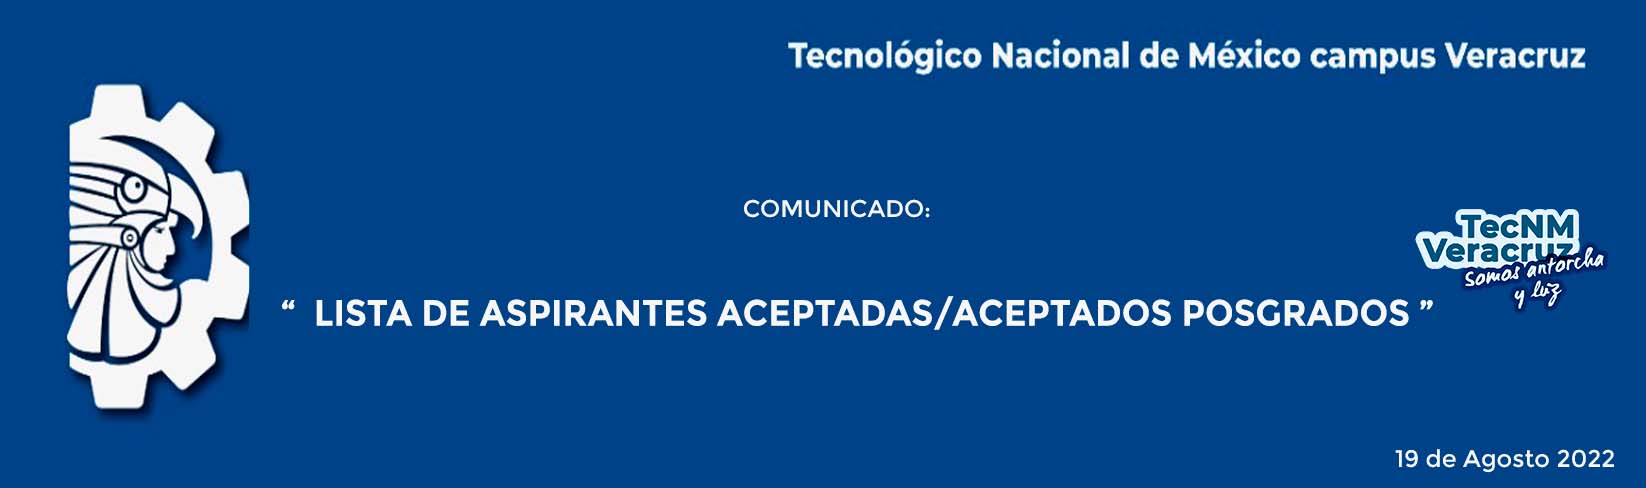 COMUNICADO: LISTA DE ASPIRANTES ACEPTADAS/ACEPTADOS POSGRADOS